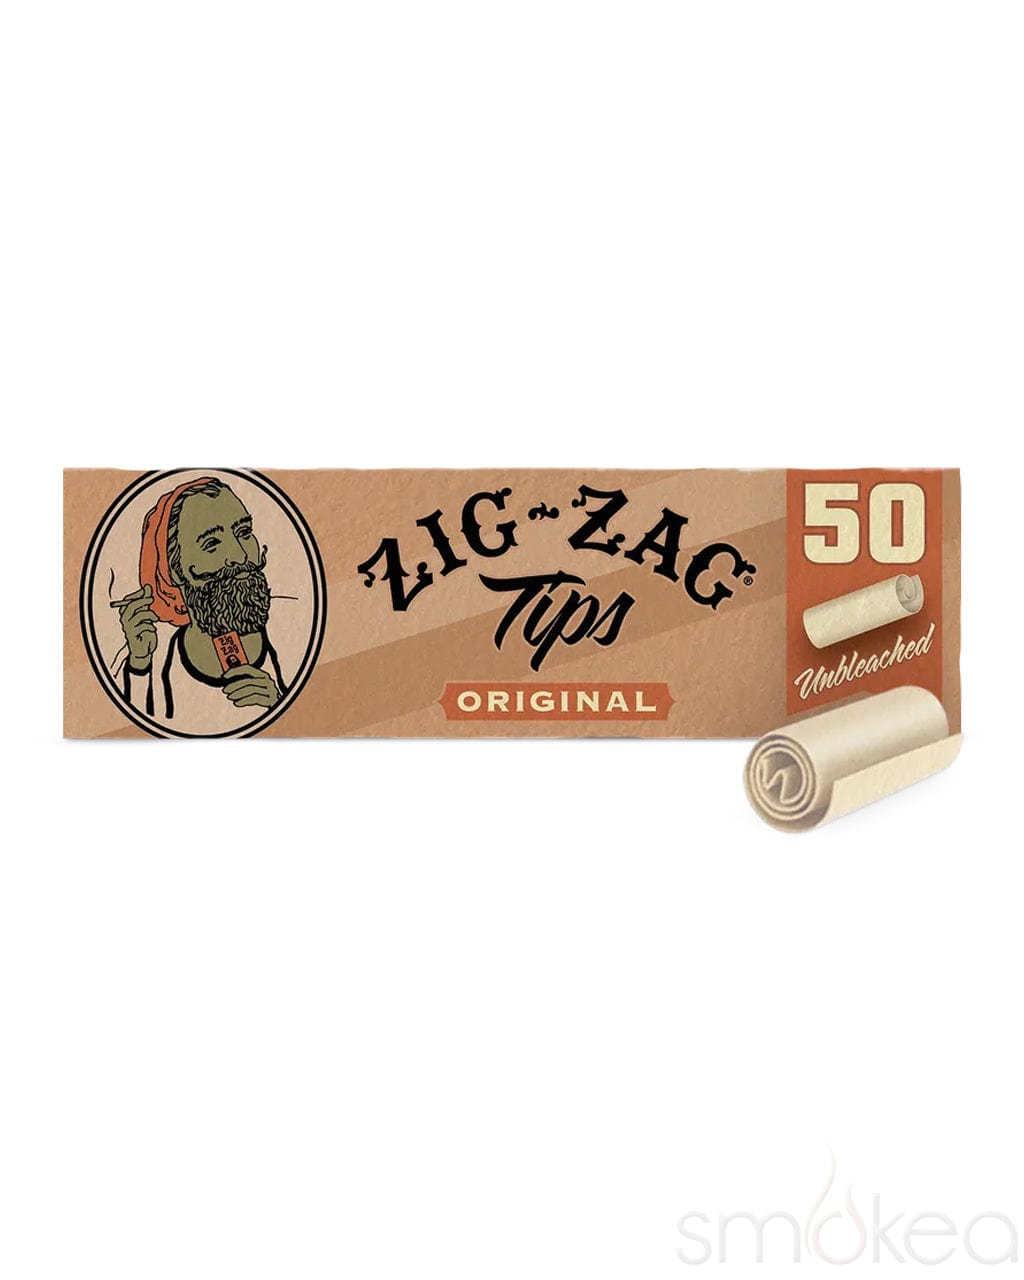 Zig Zag Original Rolling Paper Tips